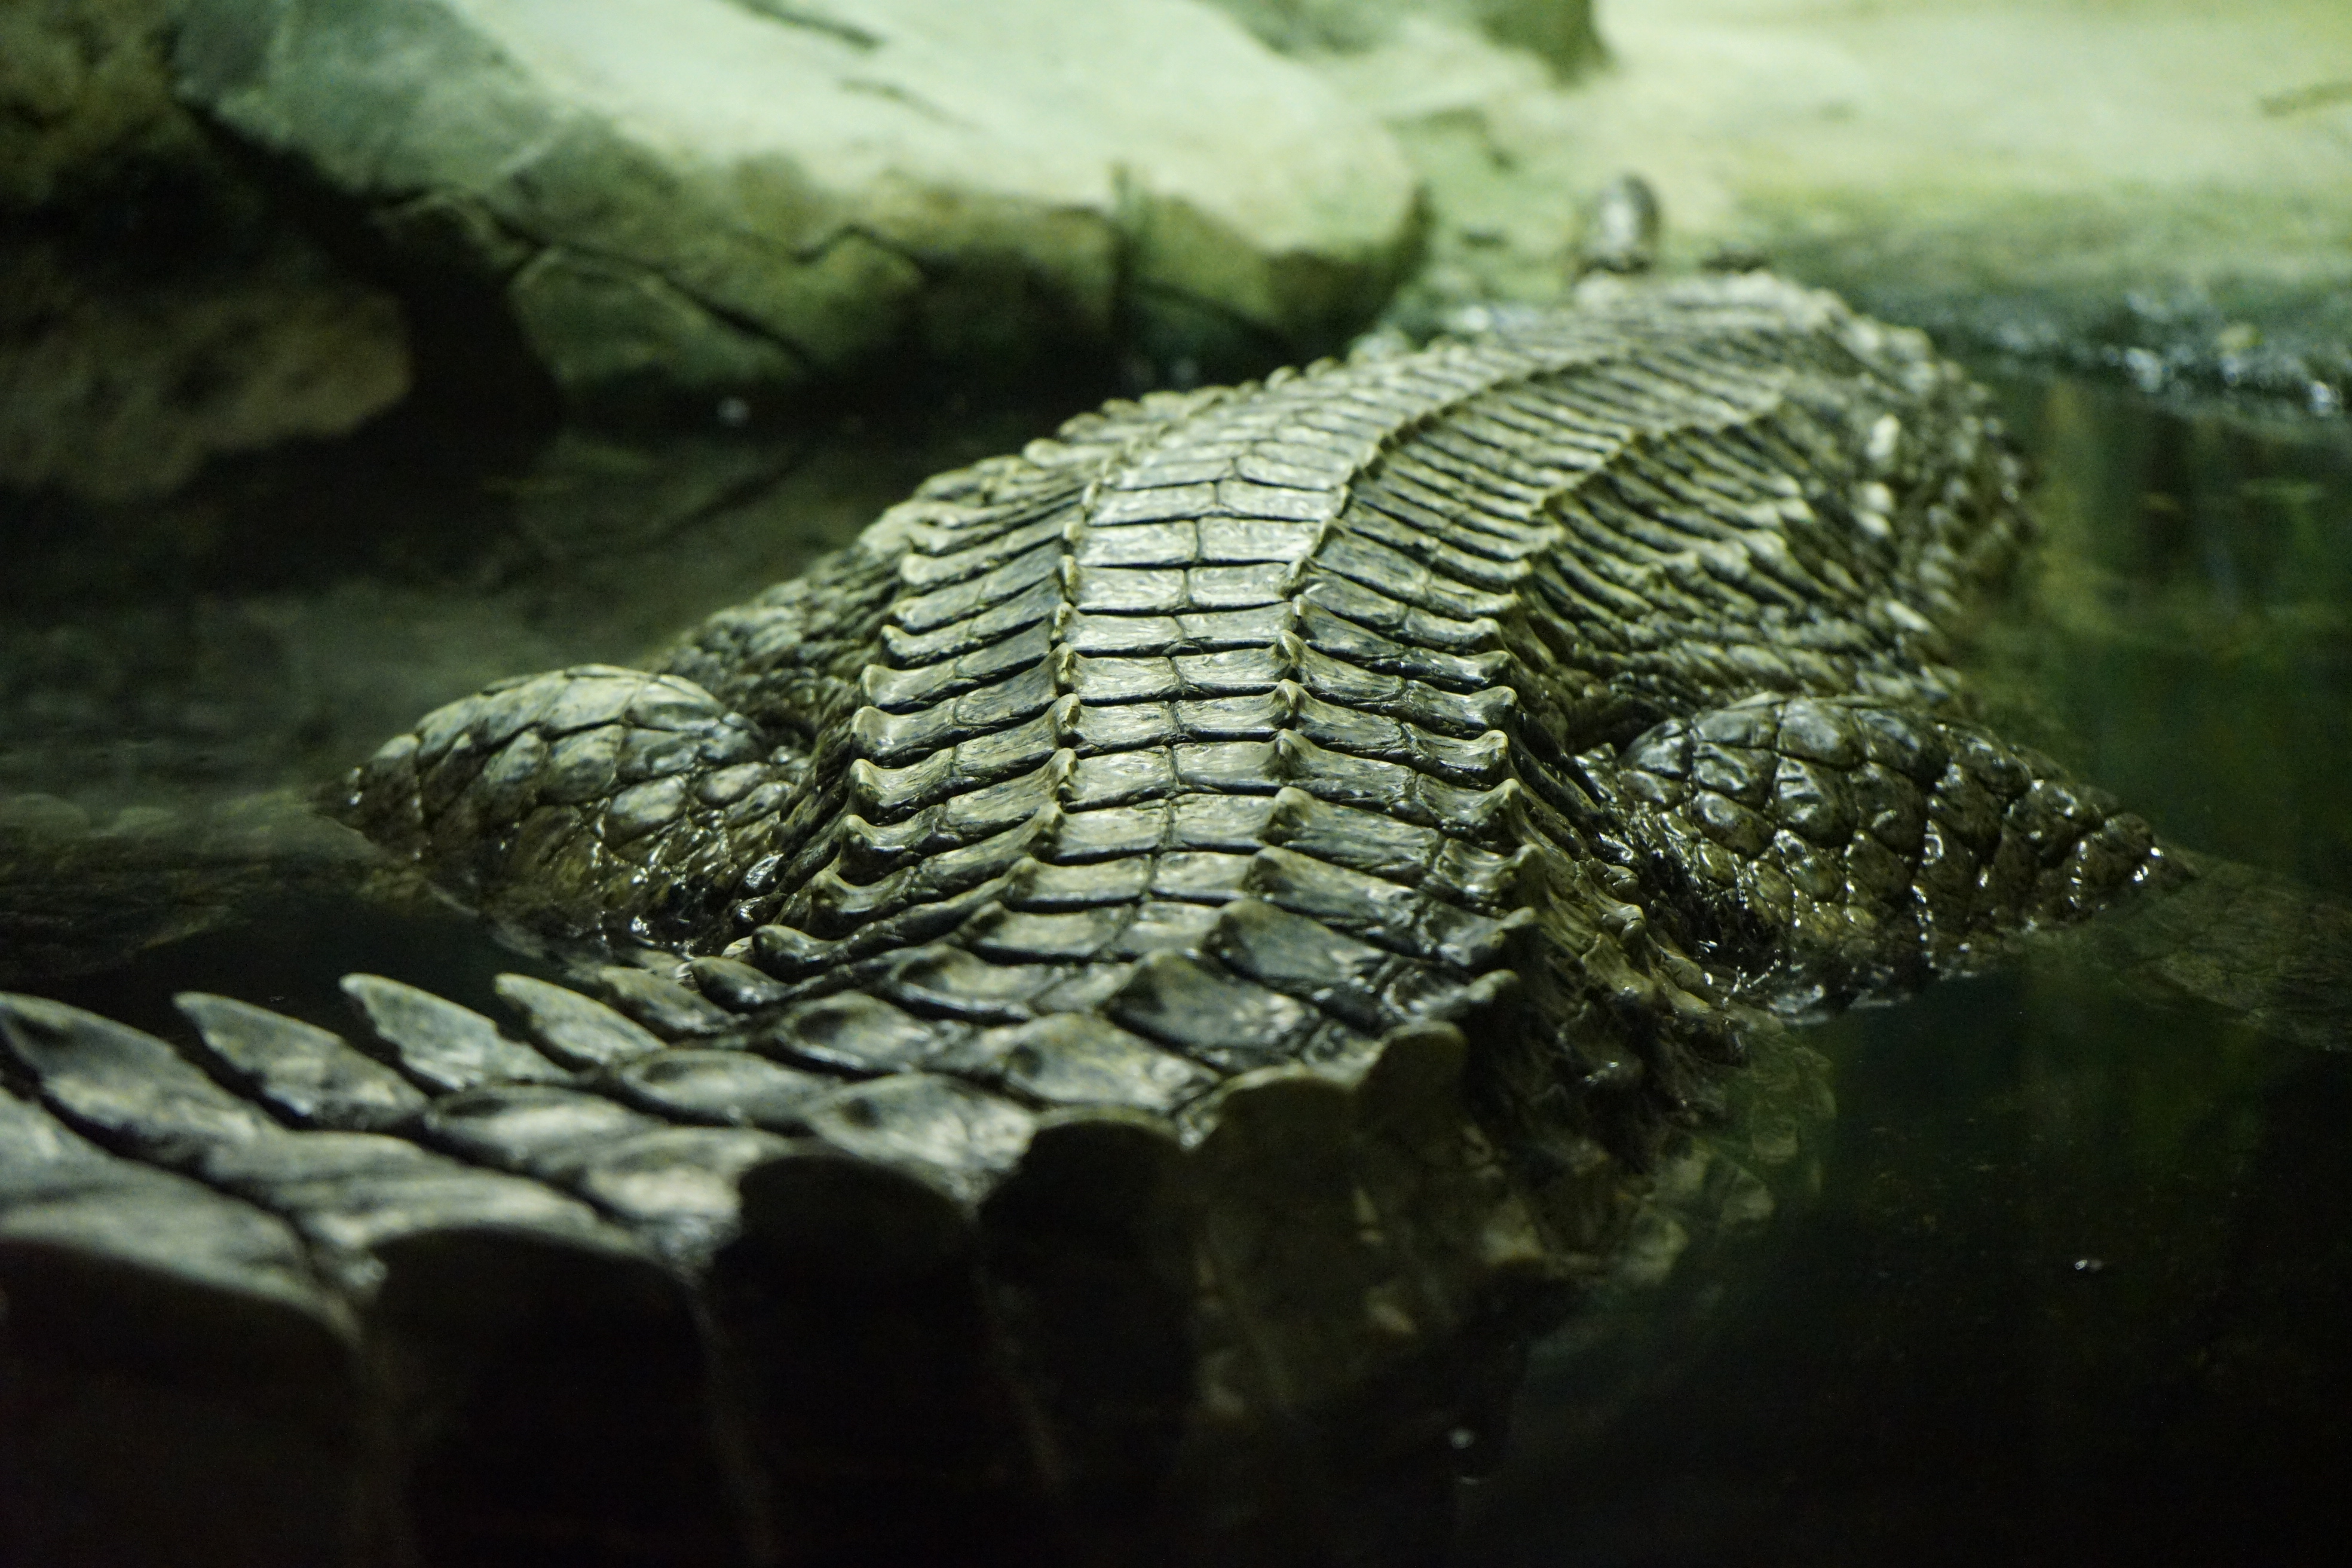 московский зоопарк крокодилов